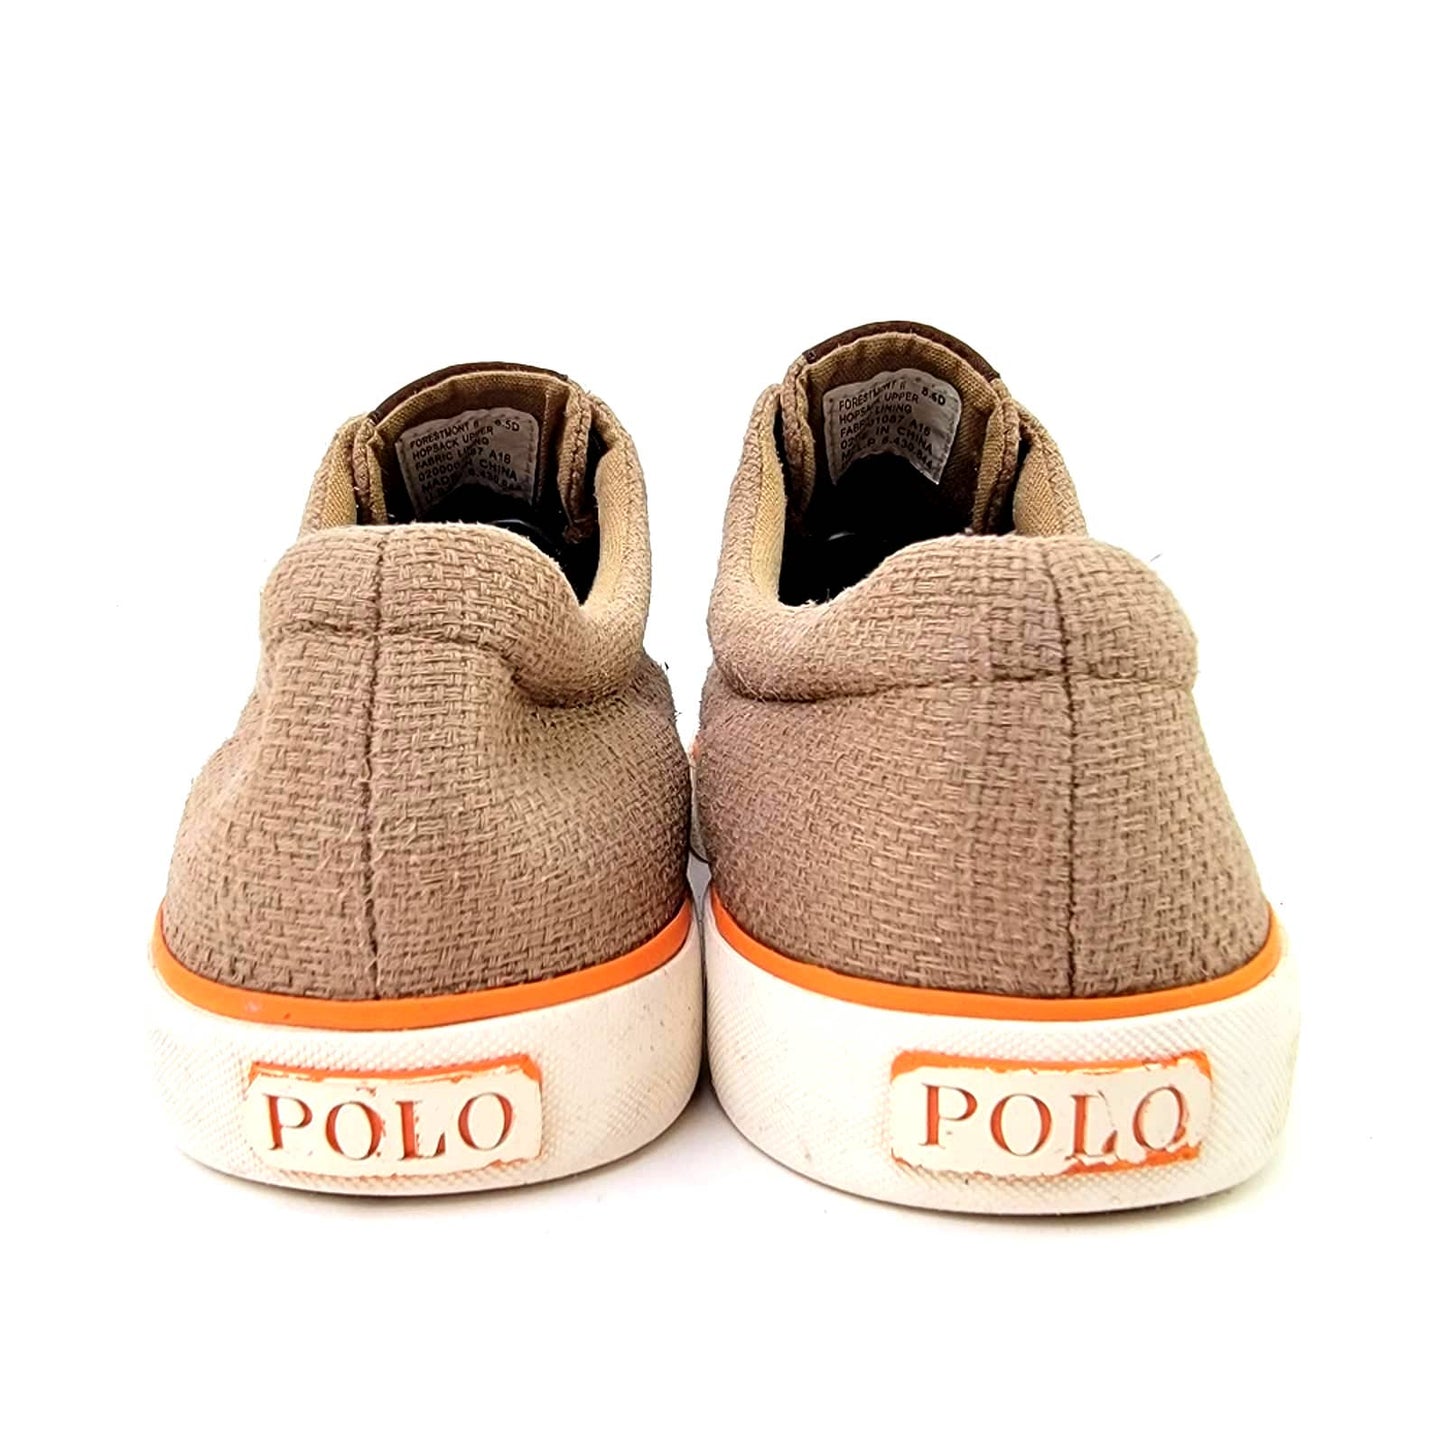 Polo Ralph Lauren Forestmont II Burlap Sneaker - 8.5